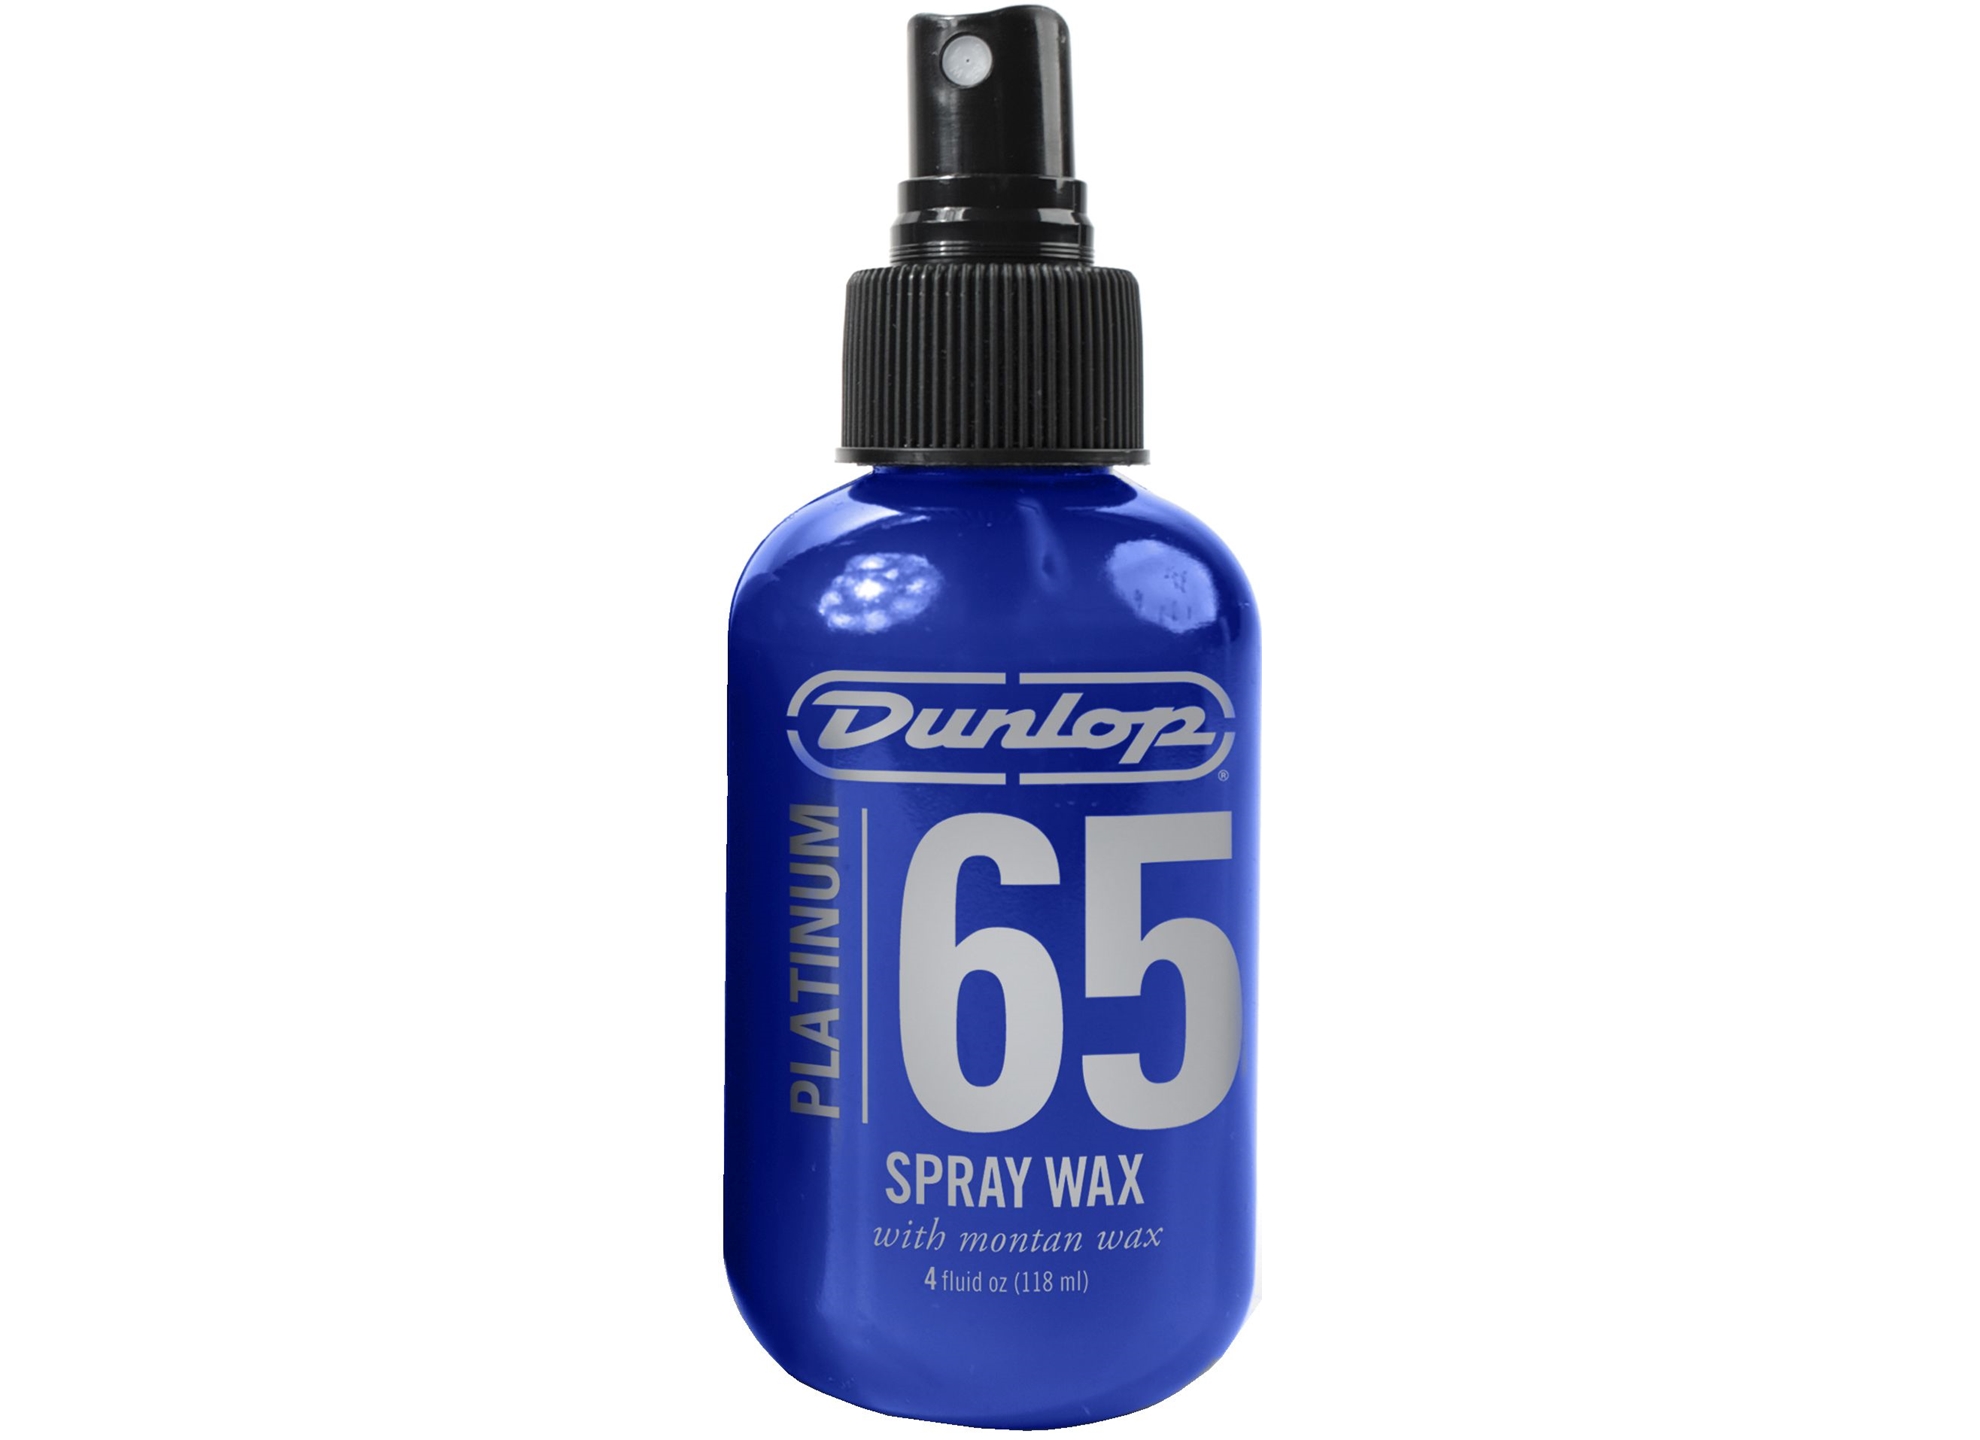 Platinum 65 Spray Wax